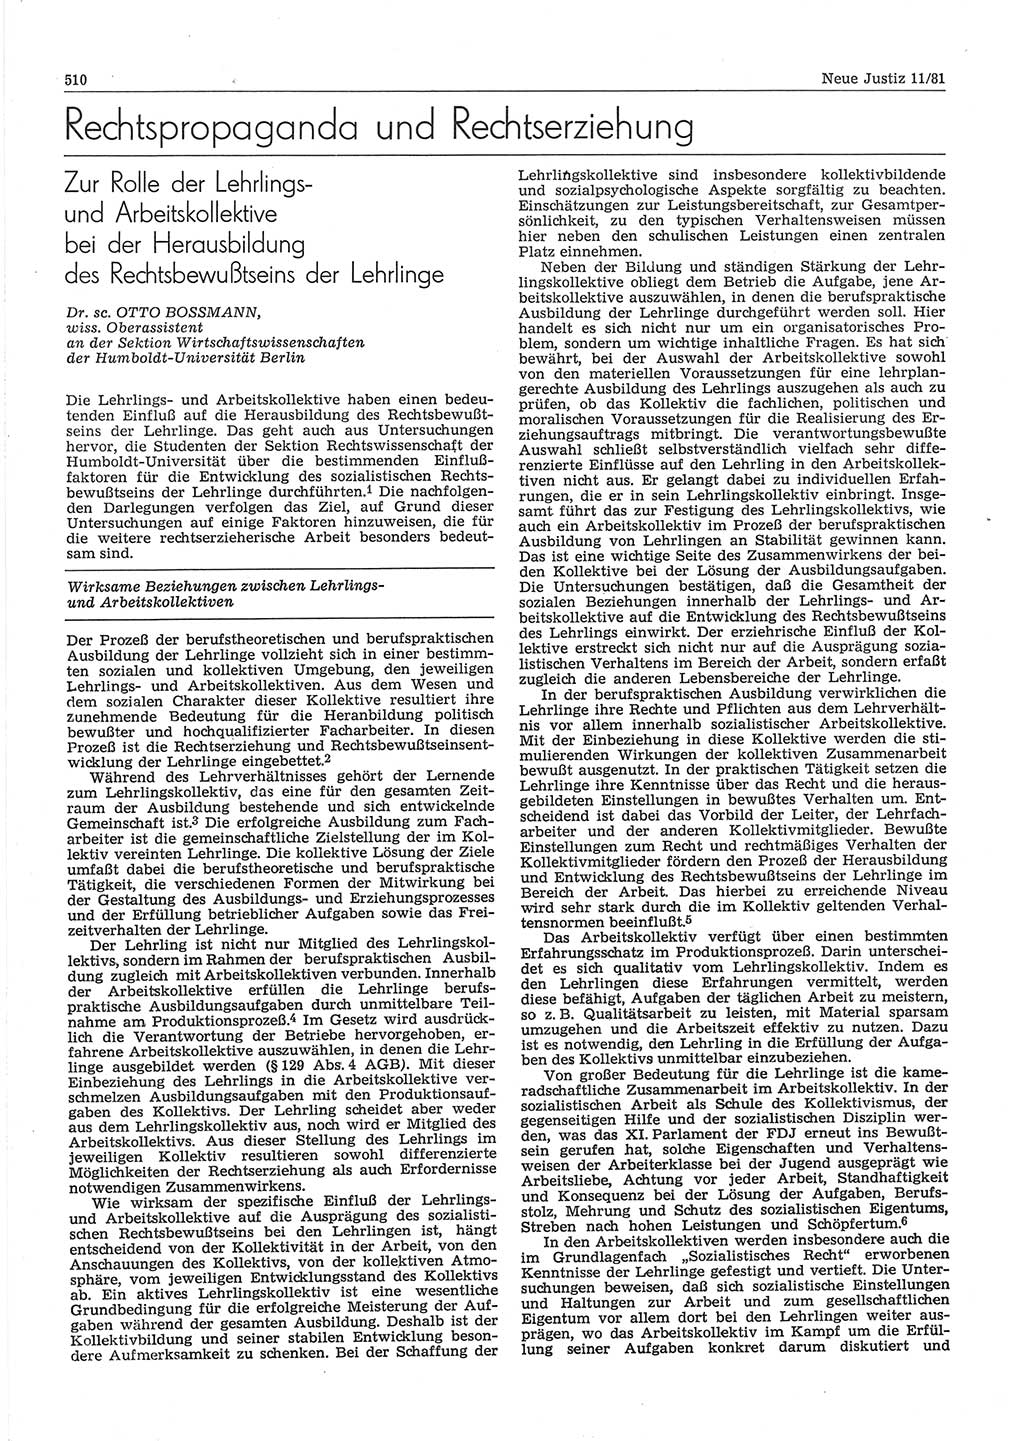 Neue Justiz (NJ), Zeitschrift für sozialistisches Recht und Gesetzlichkeit [Deutsche Demokratische Republik (DDR)], 35. Jahrgang 1981, Seite 510 (NJ DDR 1981, S. 510)